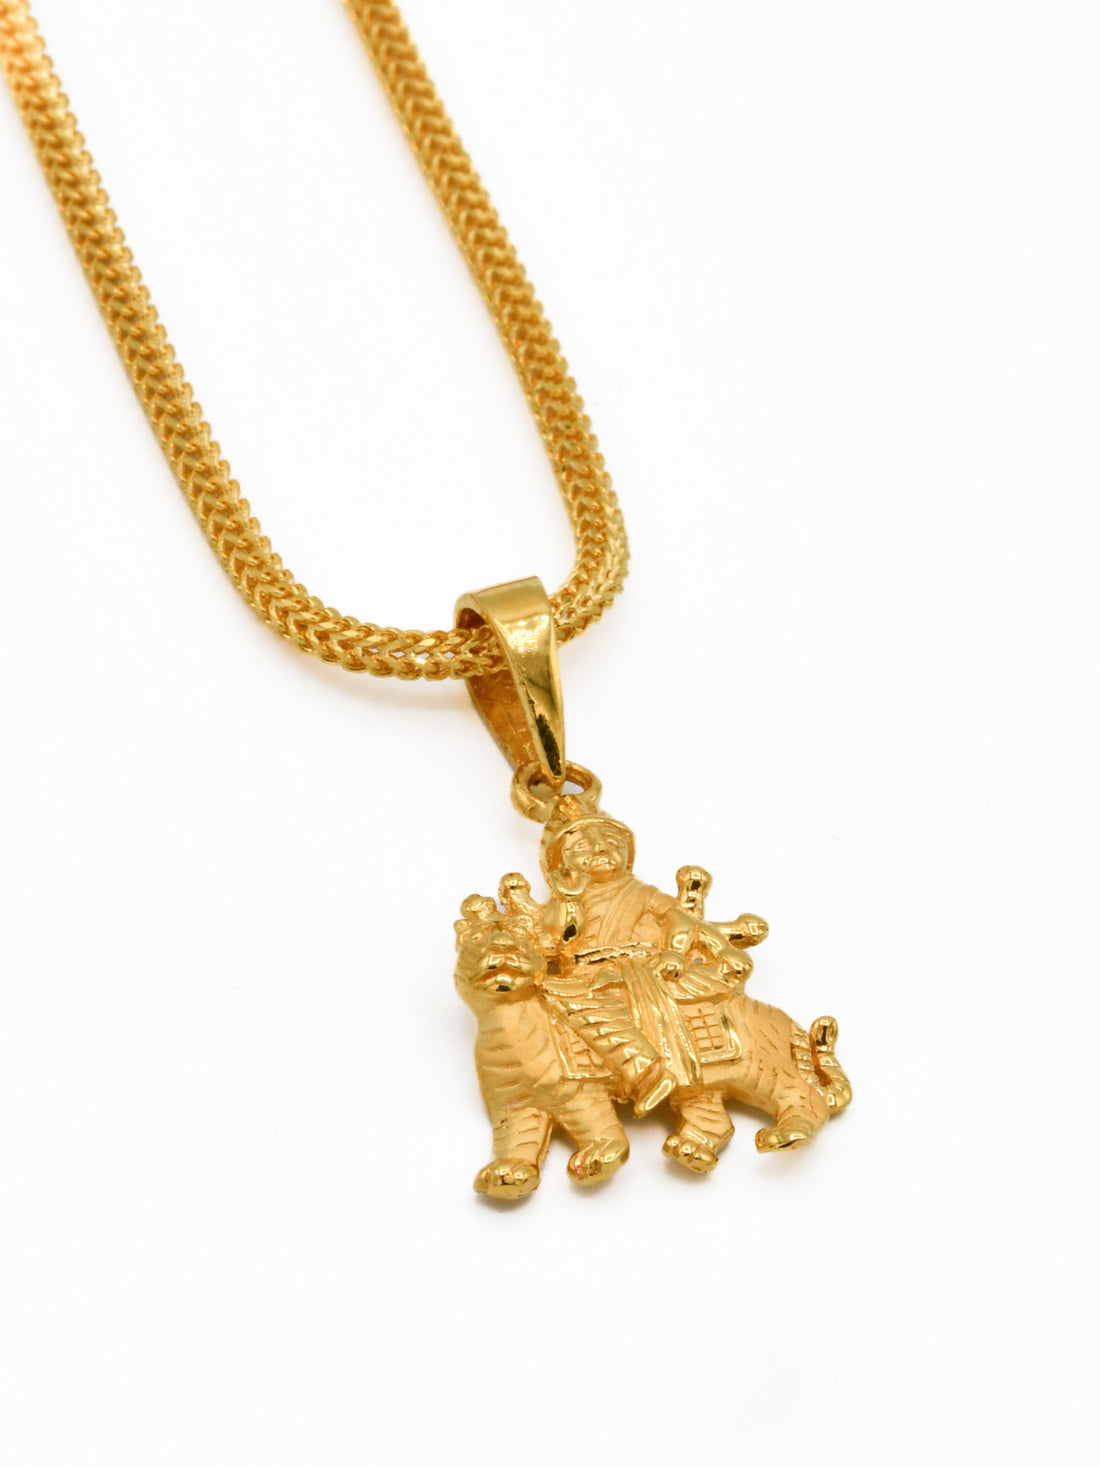 22ct Gold Ambe Mata Pendant - Roop Darshan